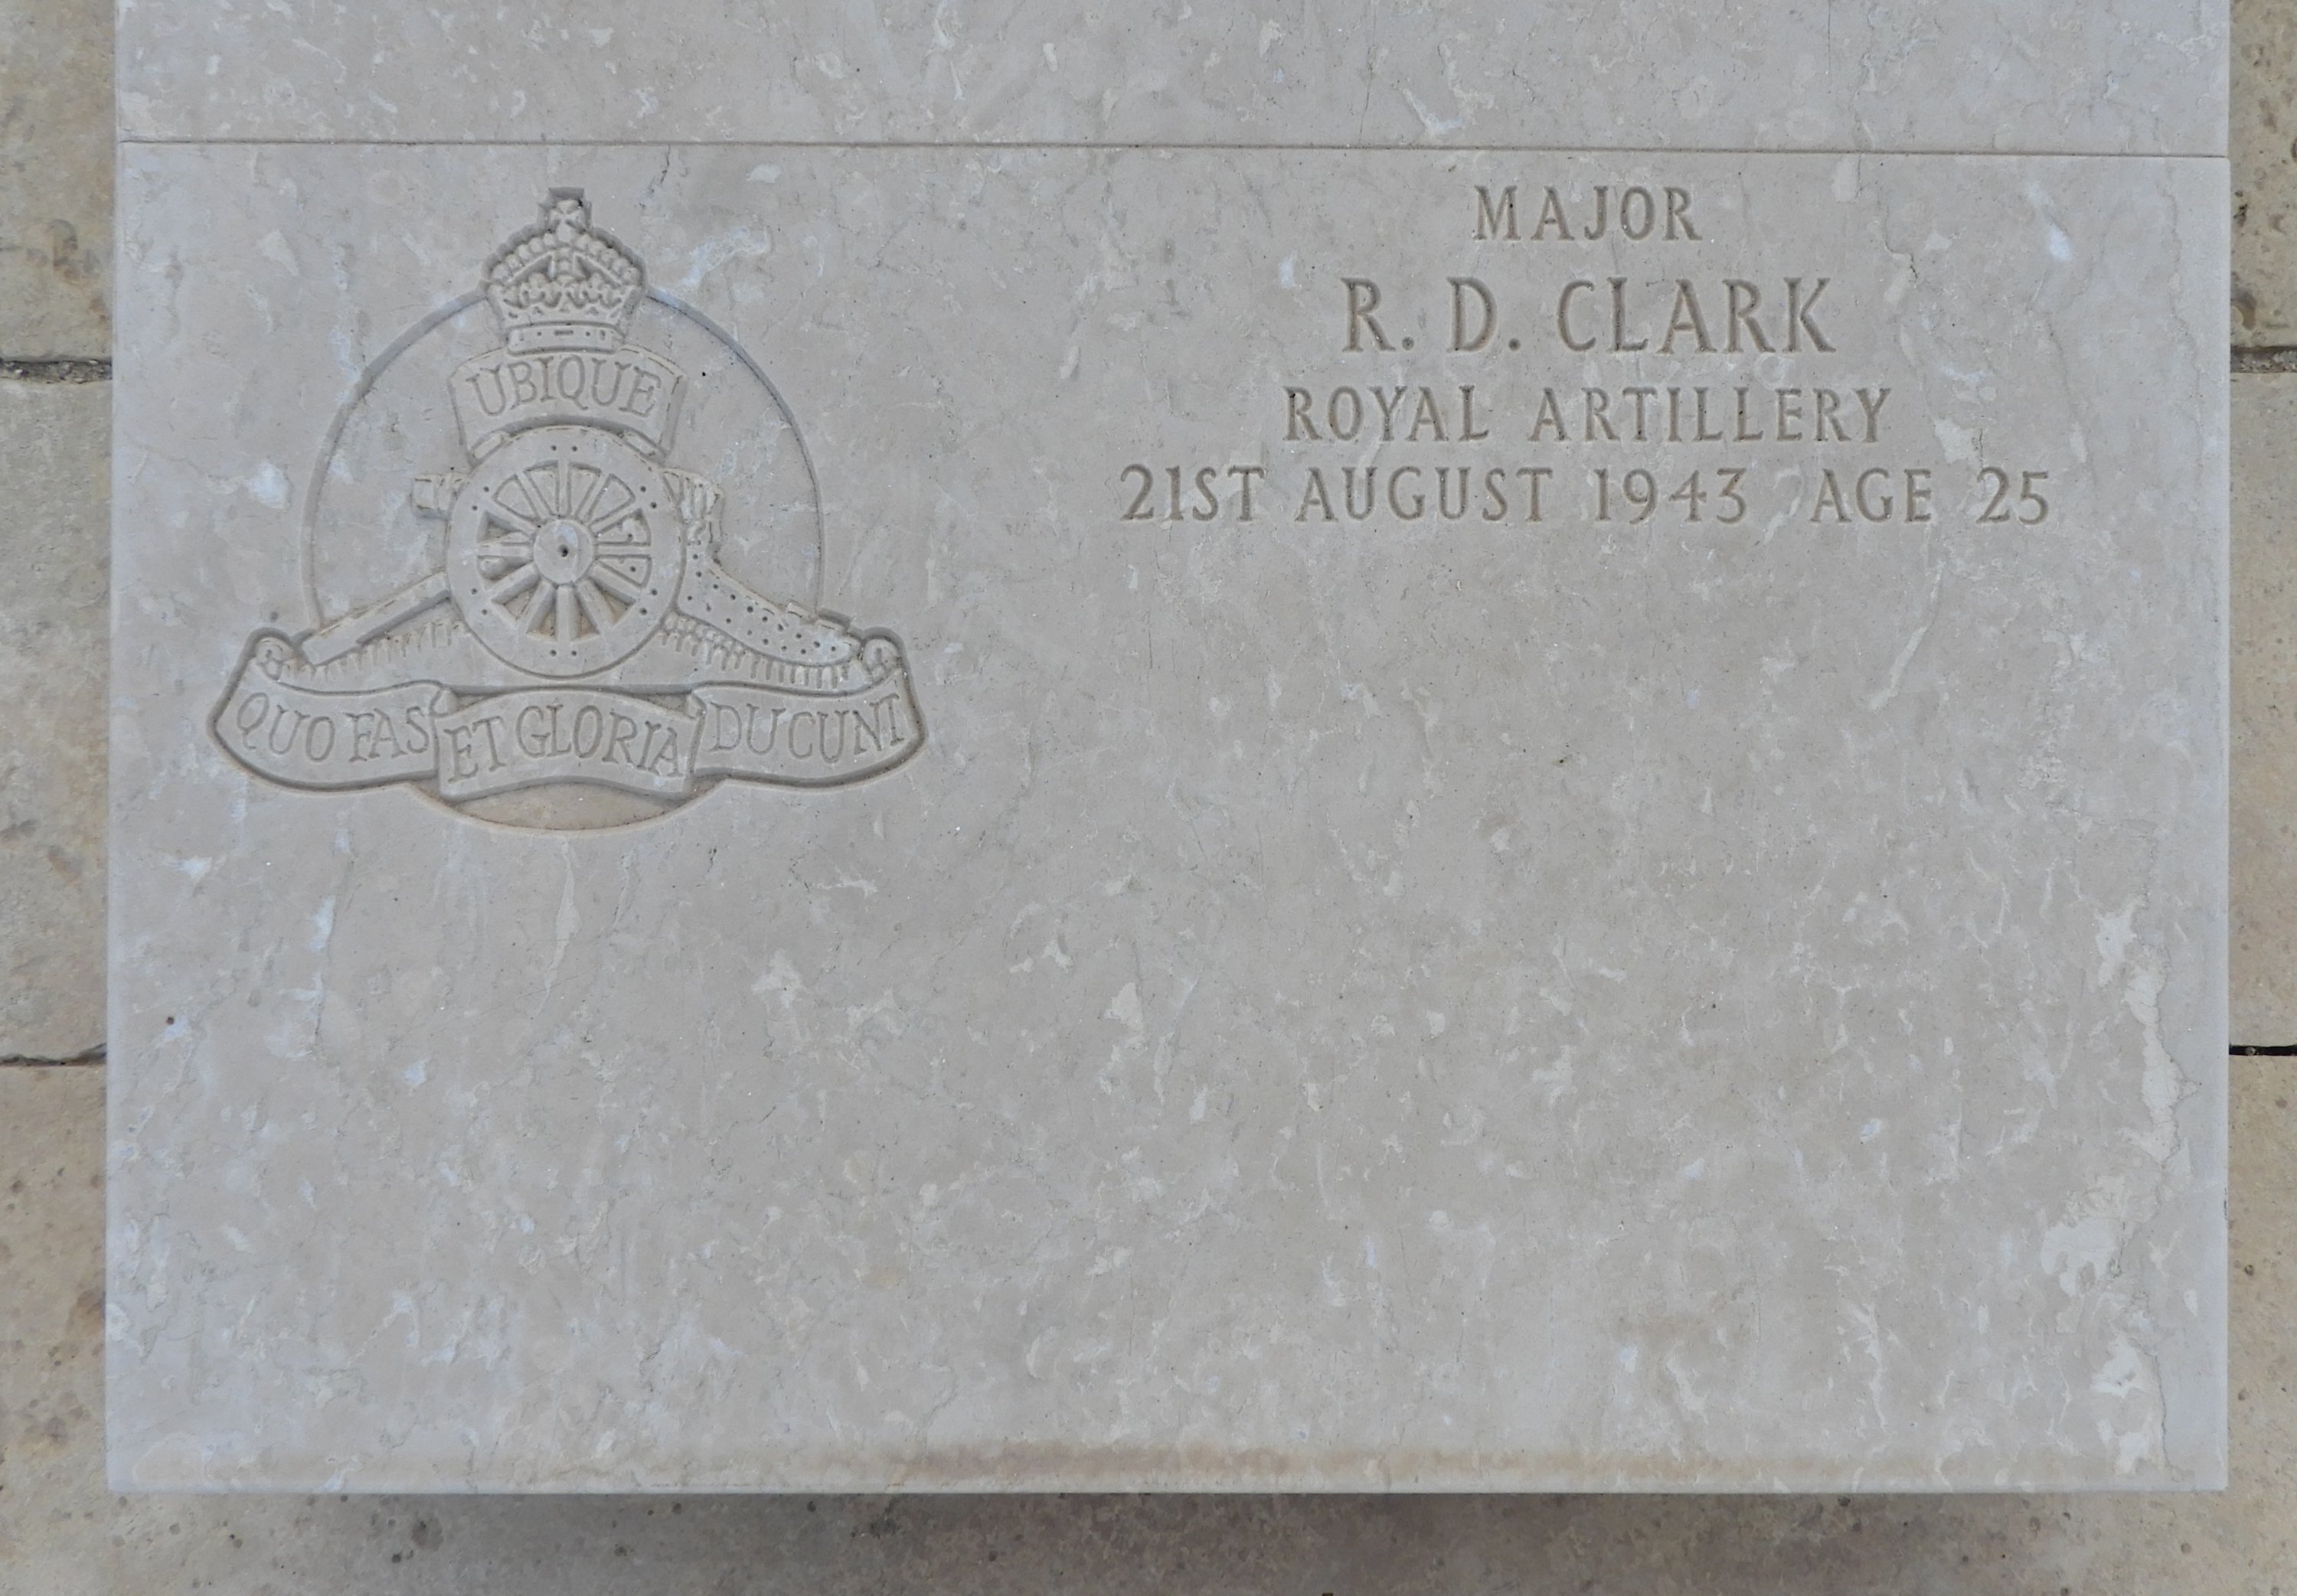 Richard Deacon CLARKE